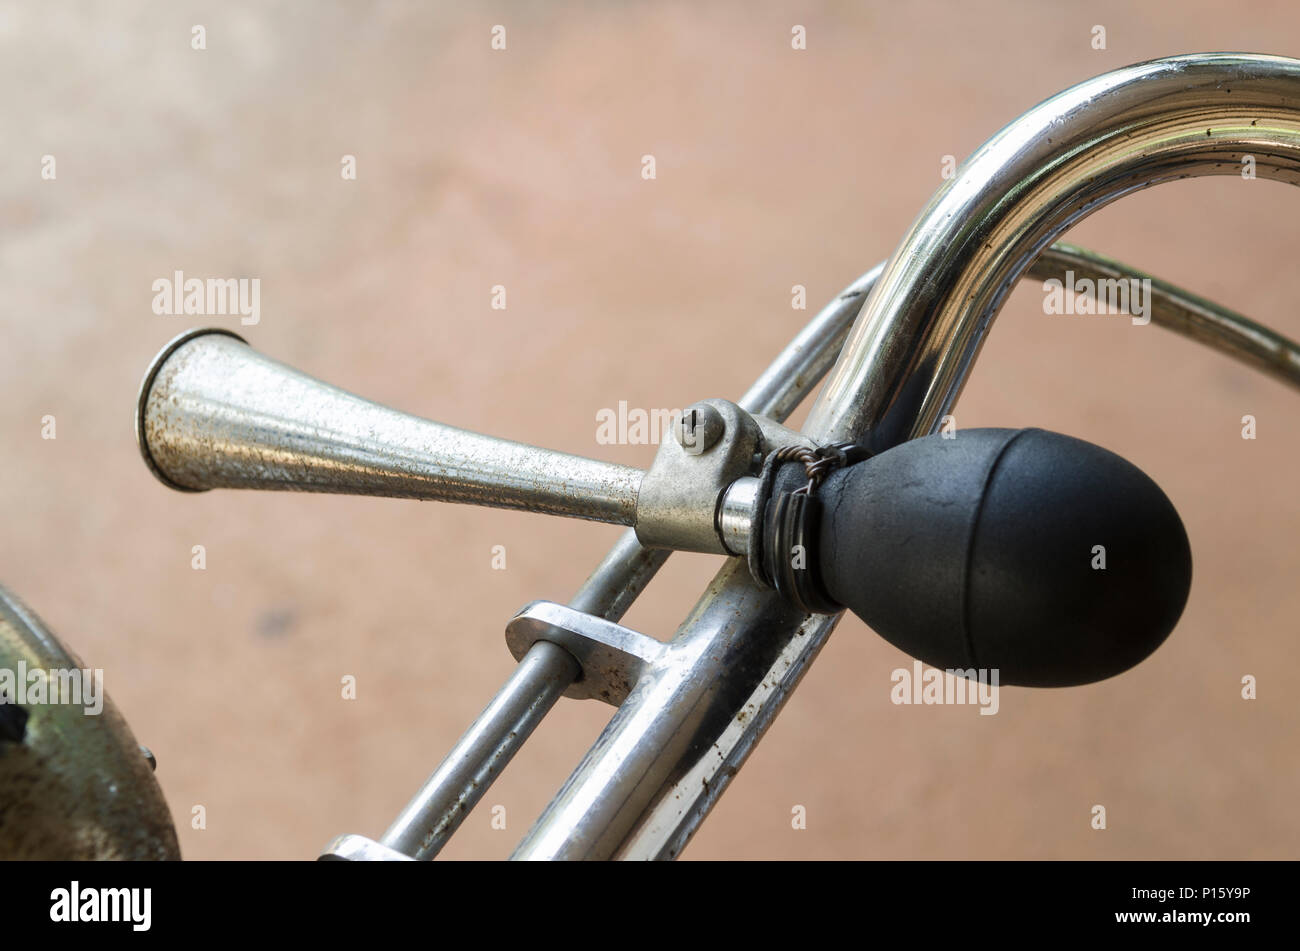 horn on bike